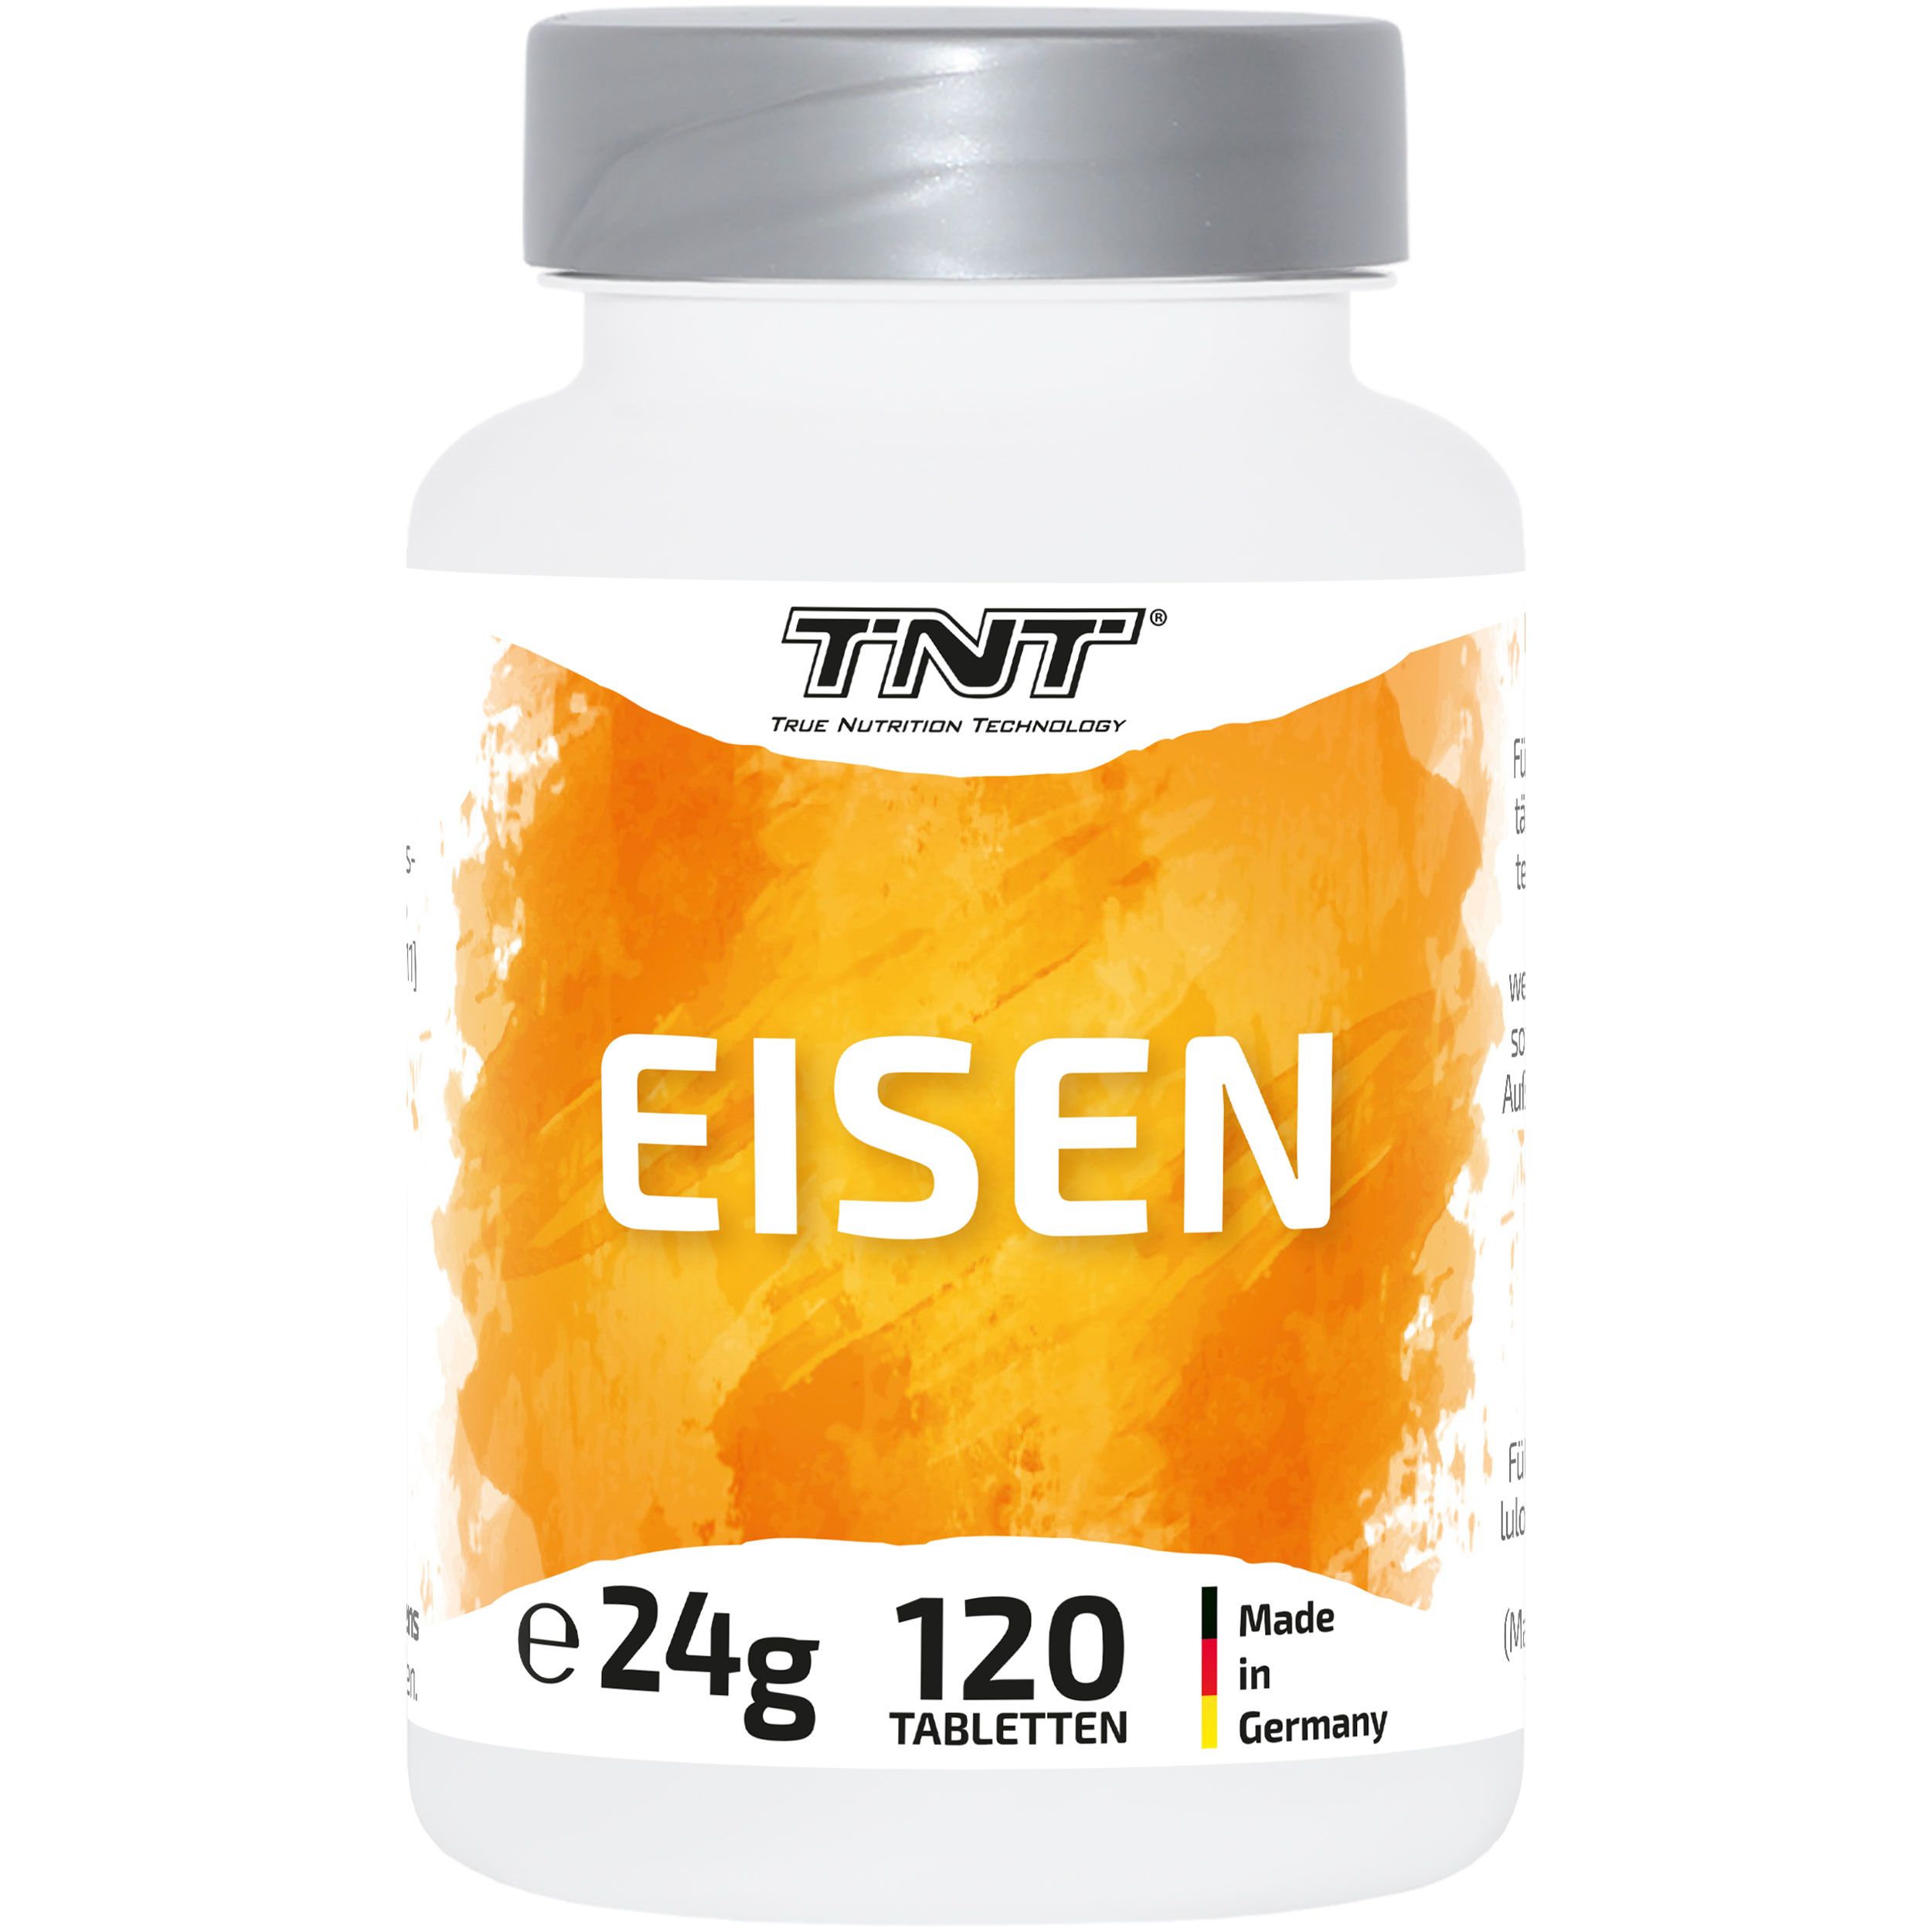 TNT Eisen - mit 18mg Eisen pro Tablette (120 Tabletten) - 100% vegan